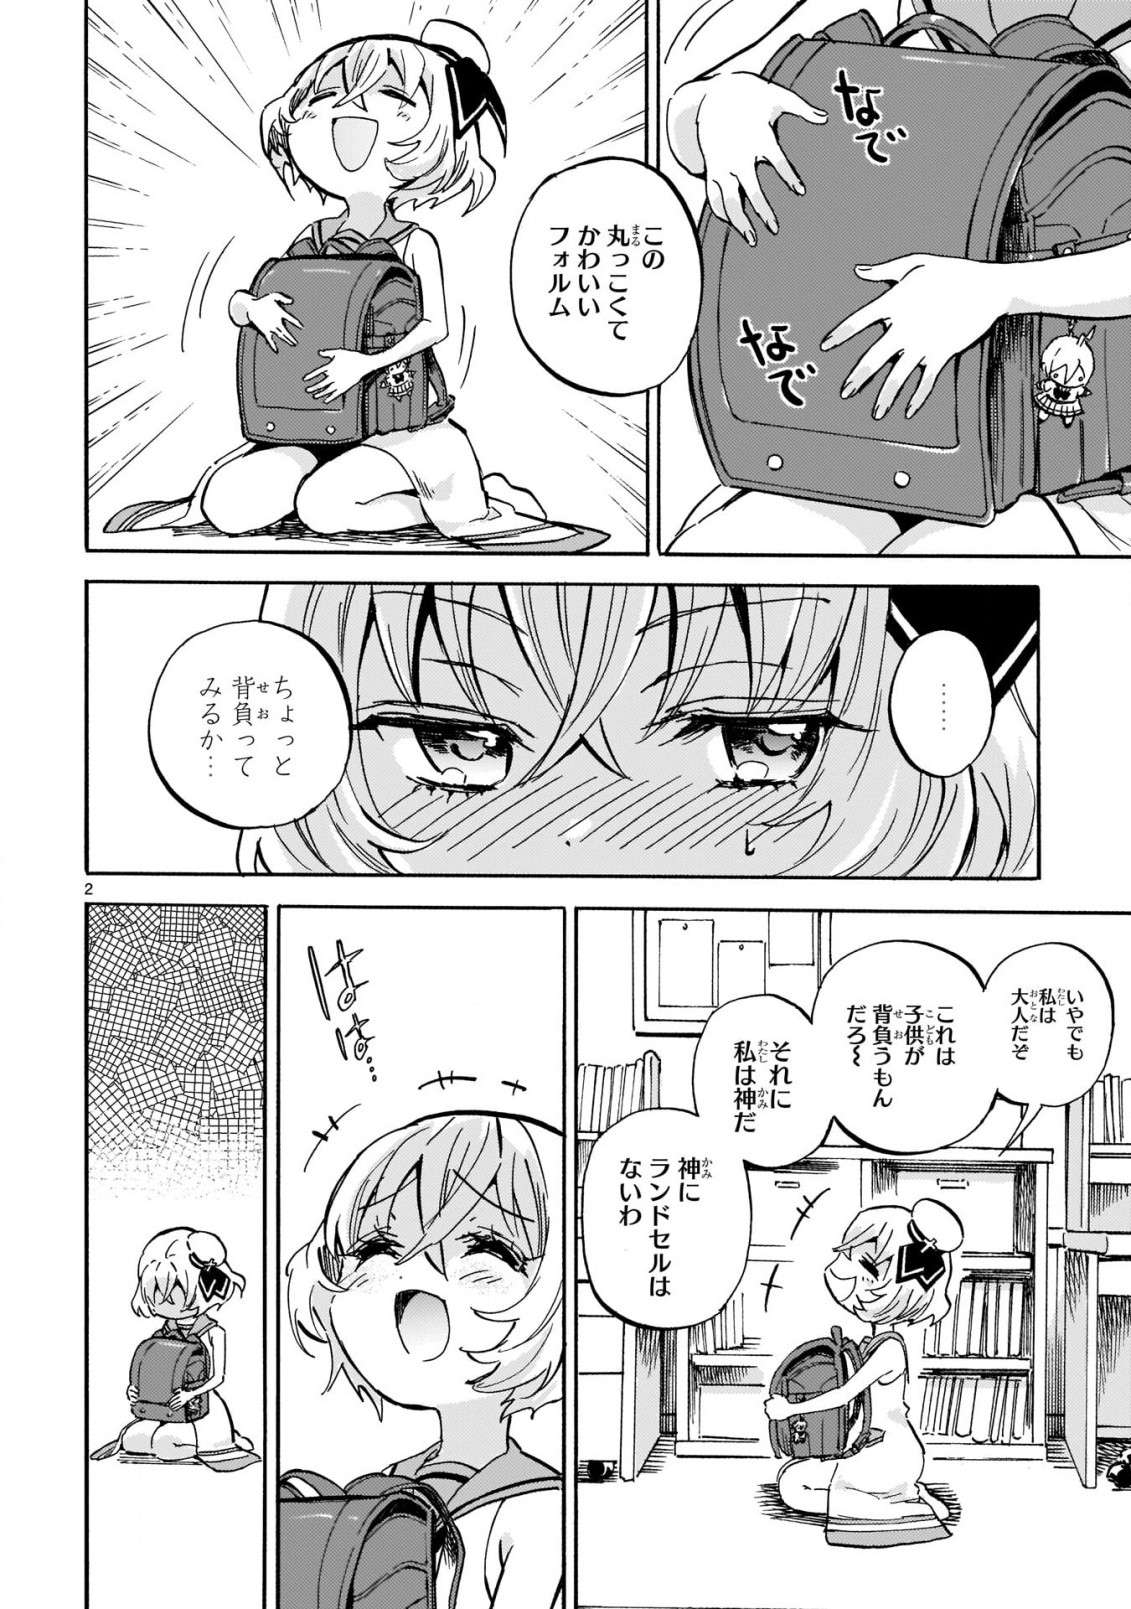 Jashin-chan Dropkick - Chapter 218 - Page 2